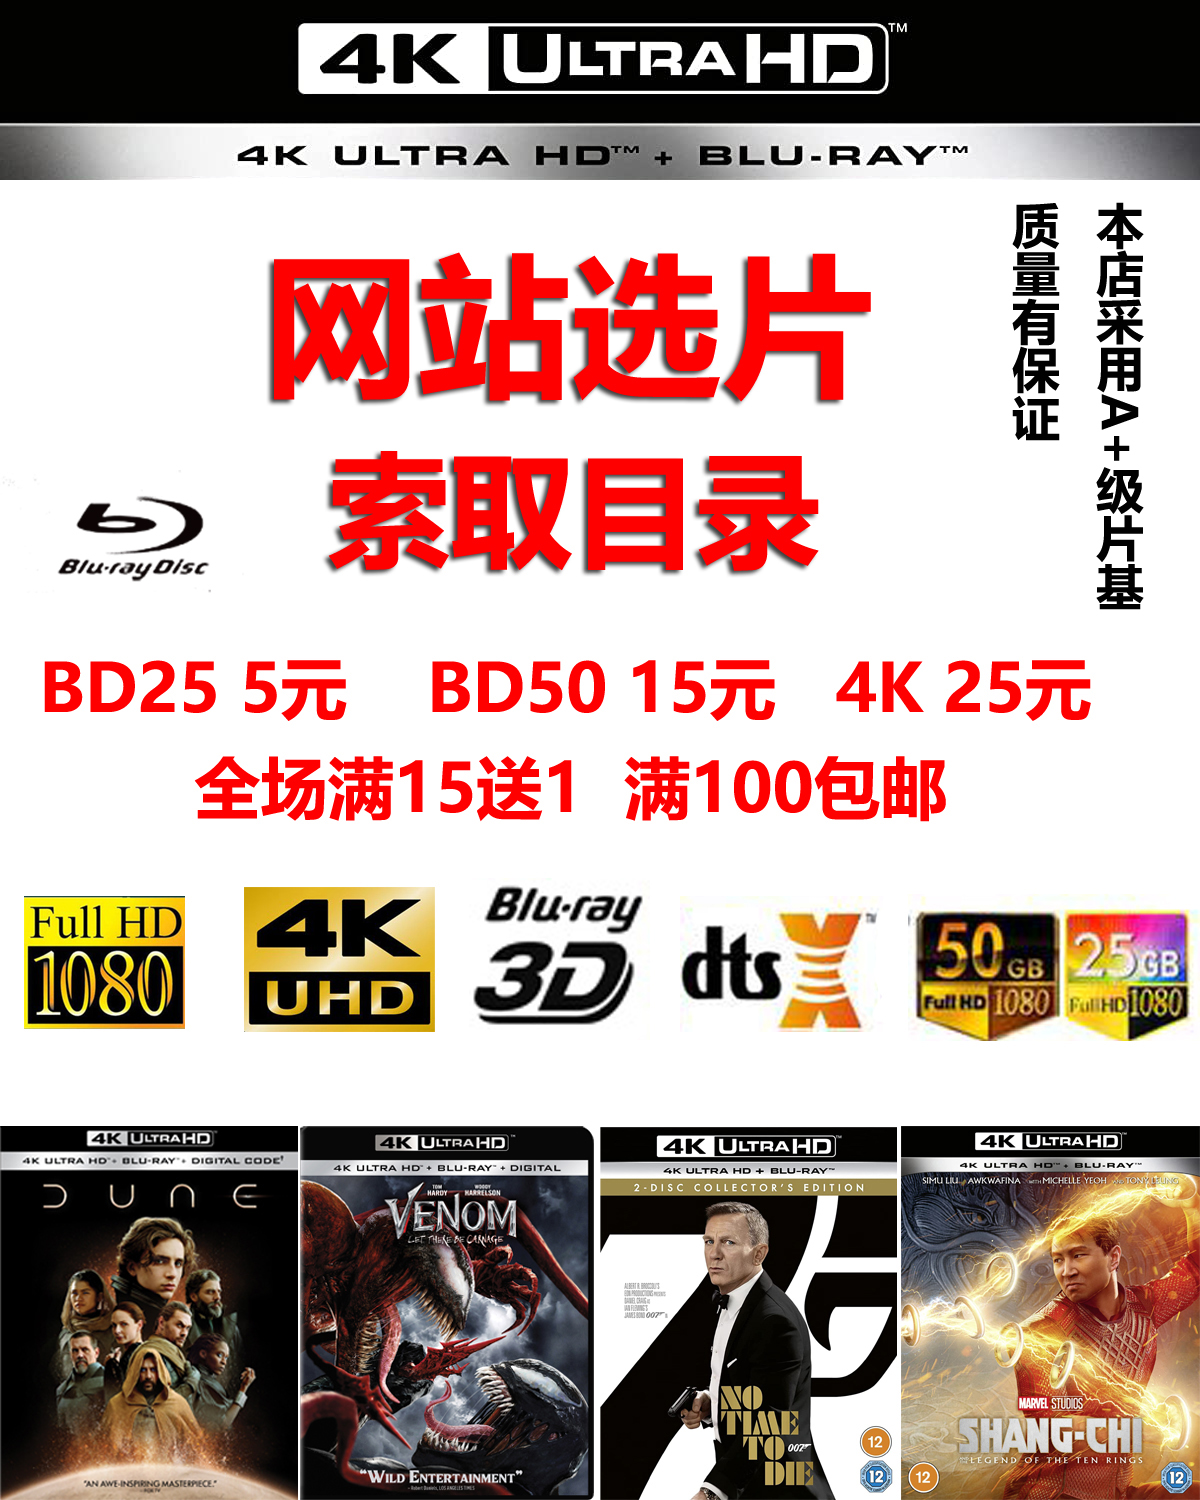 4K UHD Blu-ray 디스크 플레이어는 BD25 BD50 4K Blu-ray HD 영화 디스크를 지원합니다.